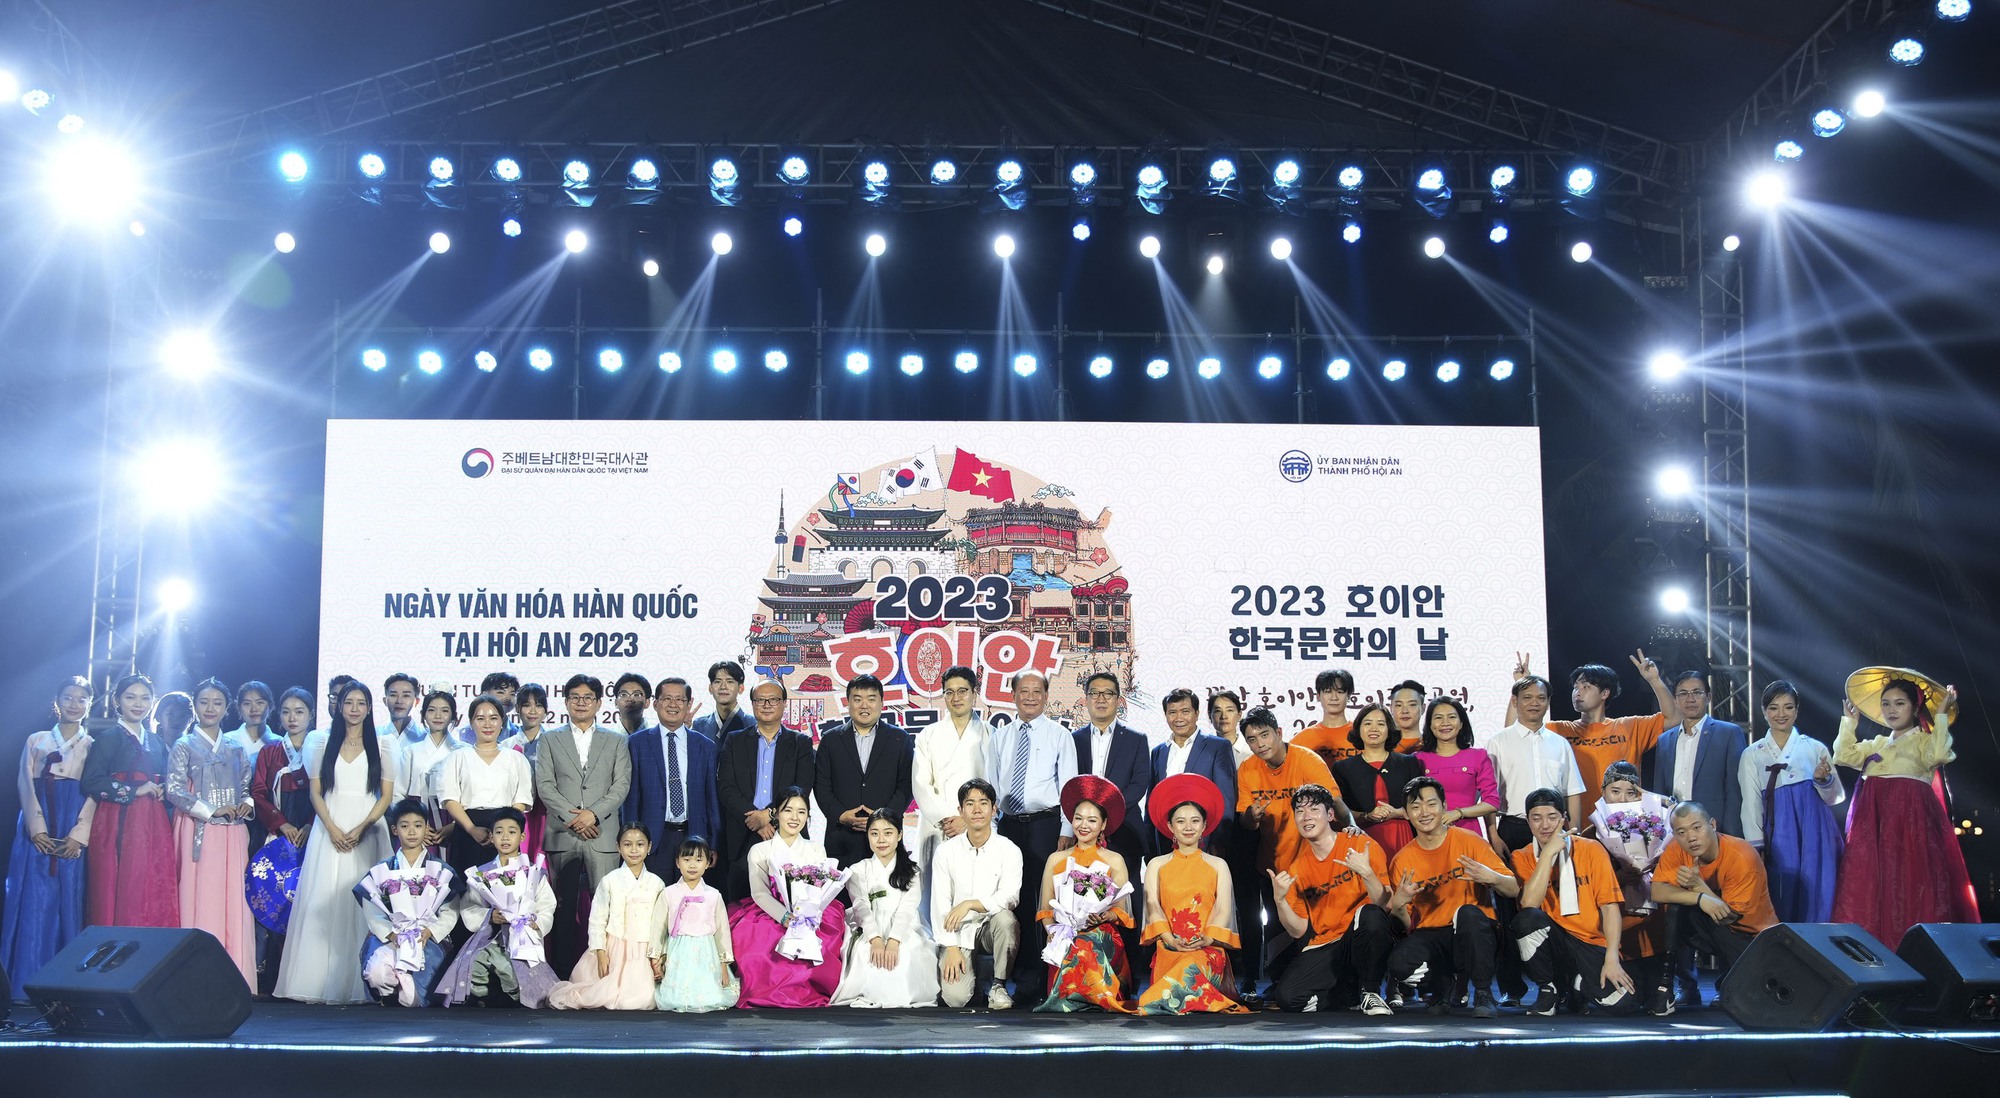 Hình ảnh ấn tượng “Ngày văn hóa Hàn Quốc tại Hội An 2023” - Ảnh 18.